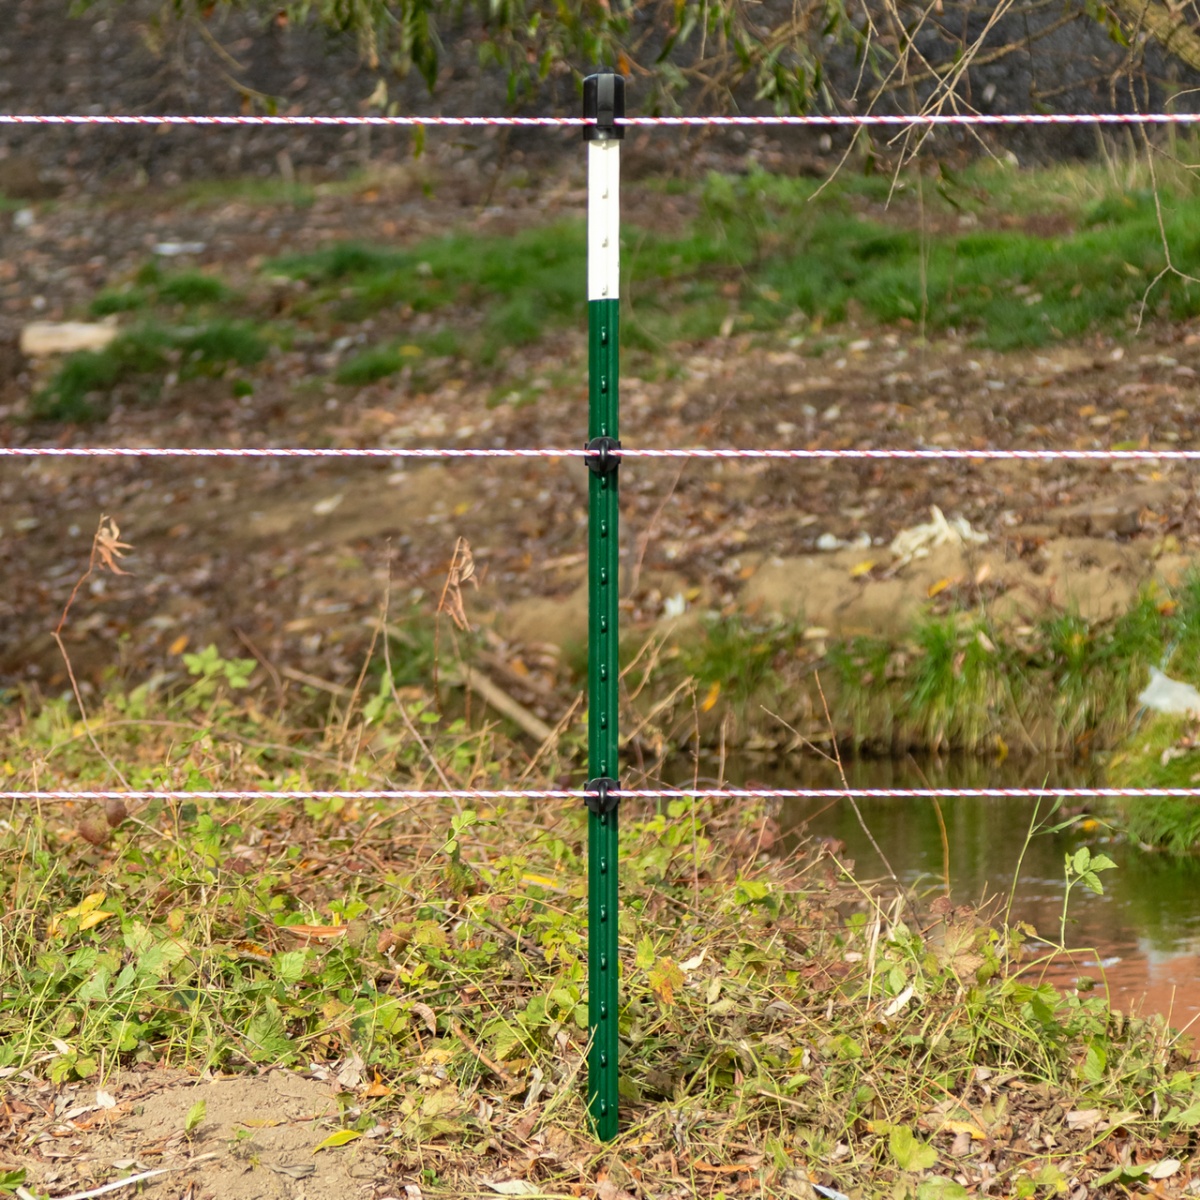 T-post fém kerítésoszlop, 167 cm